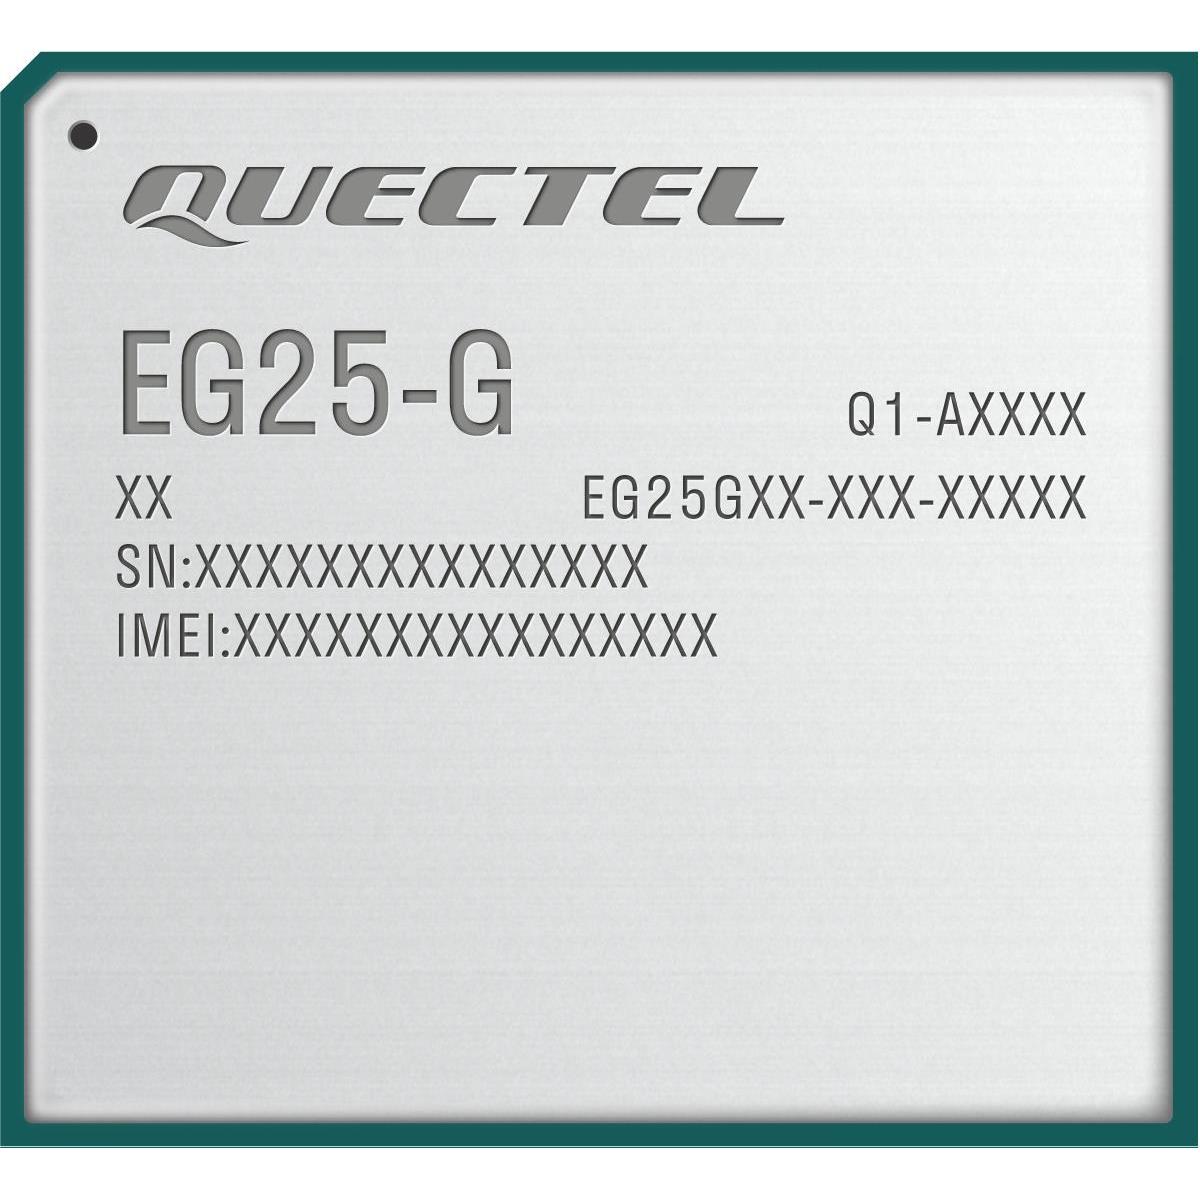 The model is EG25GGBTEA-256-SGNS